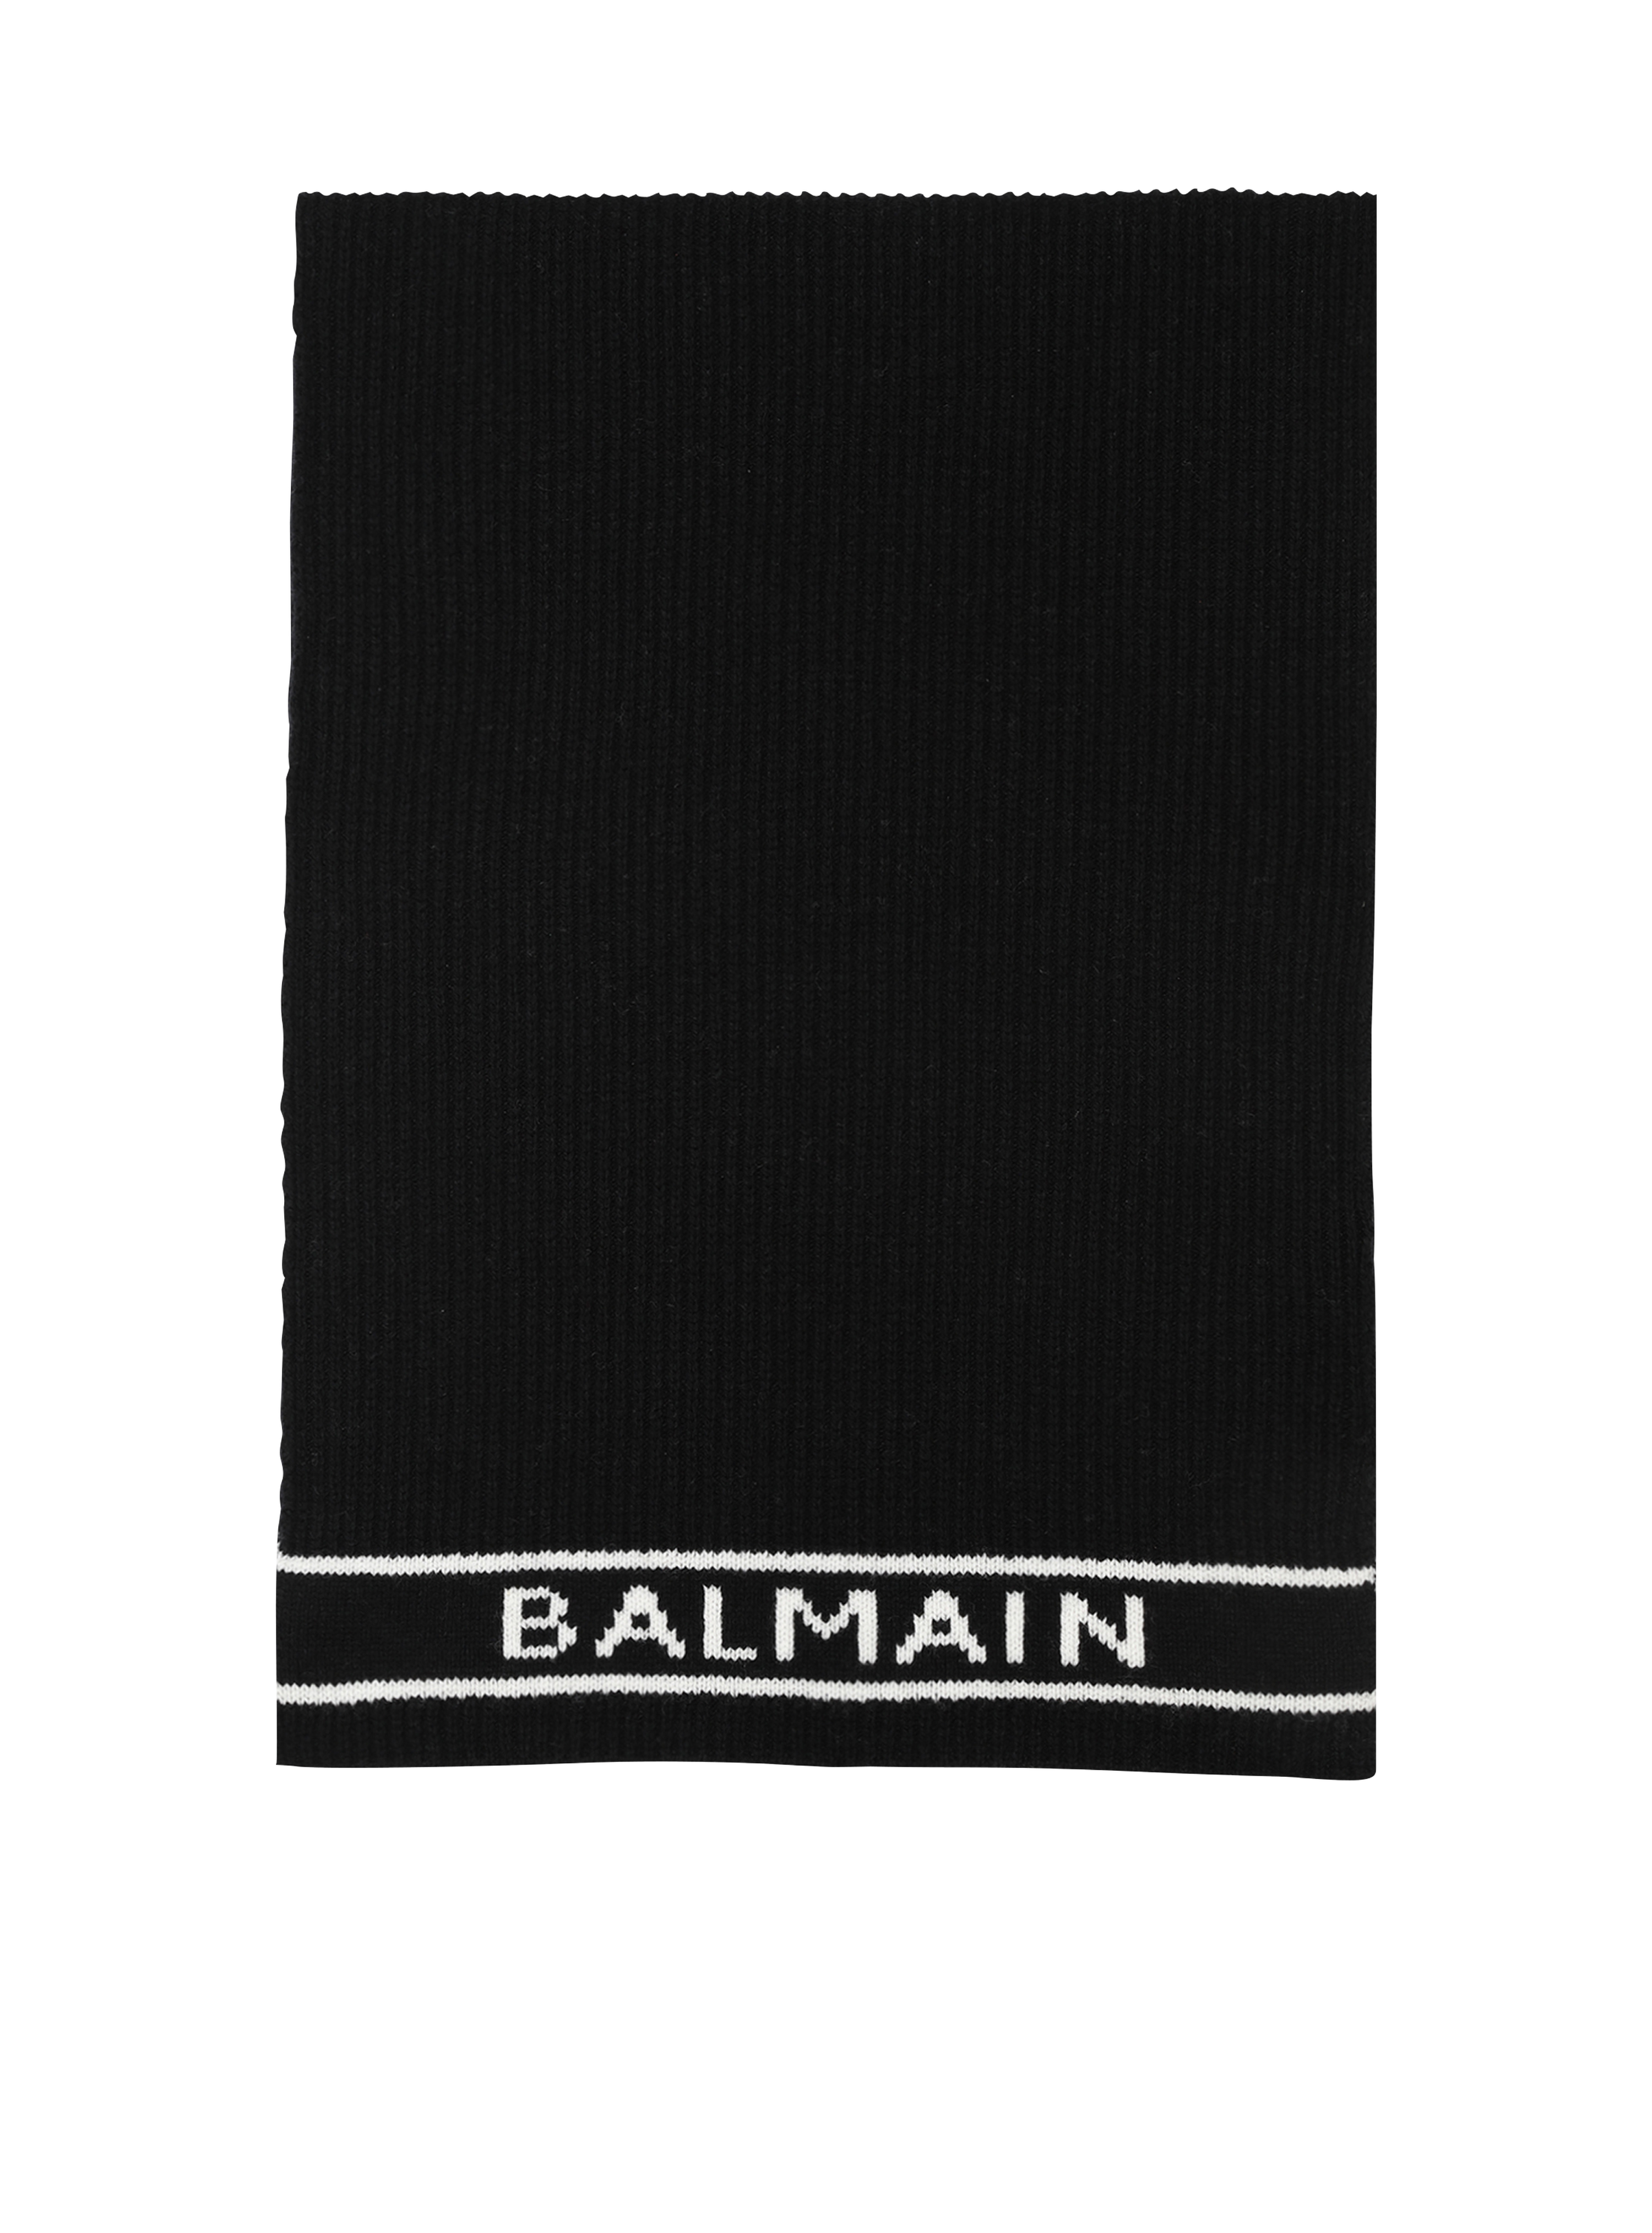 Schal aus Wolle mit Balmain-Logo in Weiß, schwarz